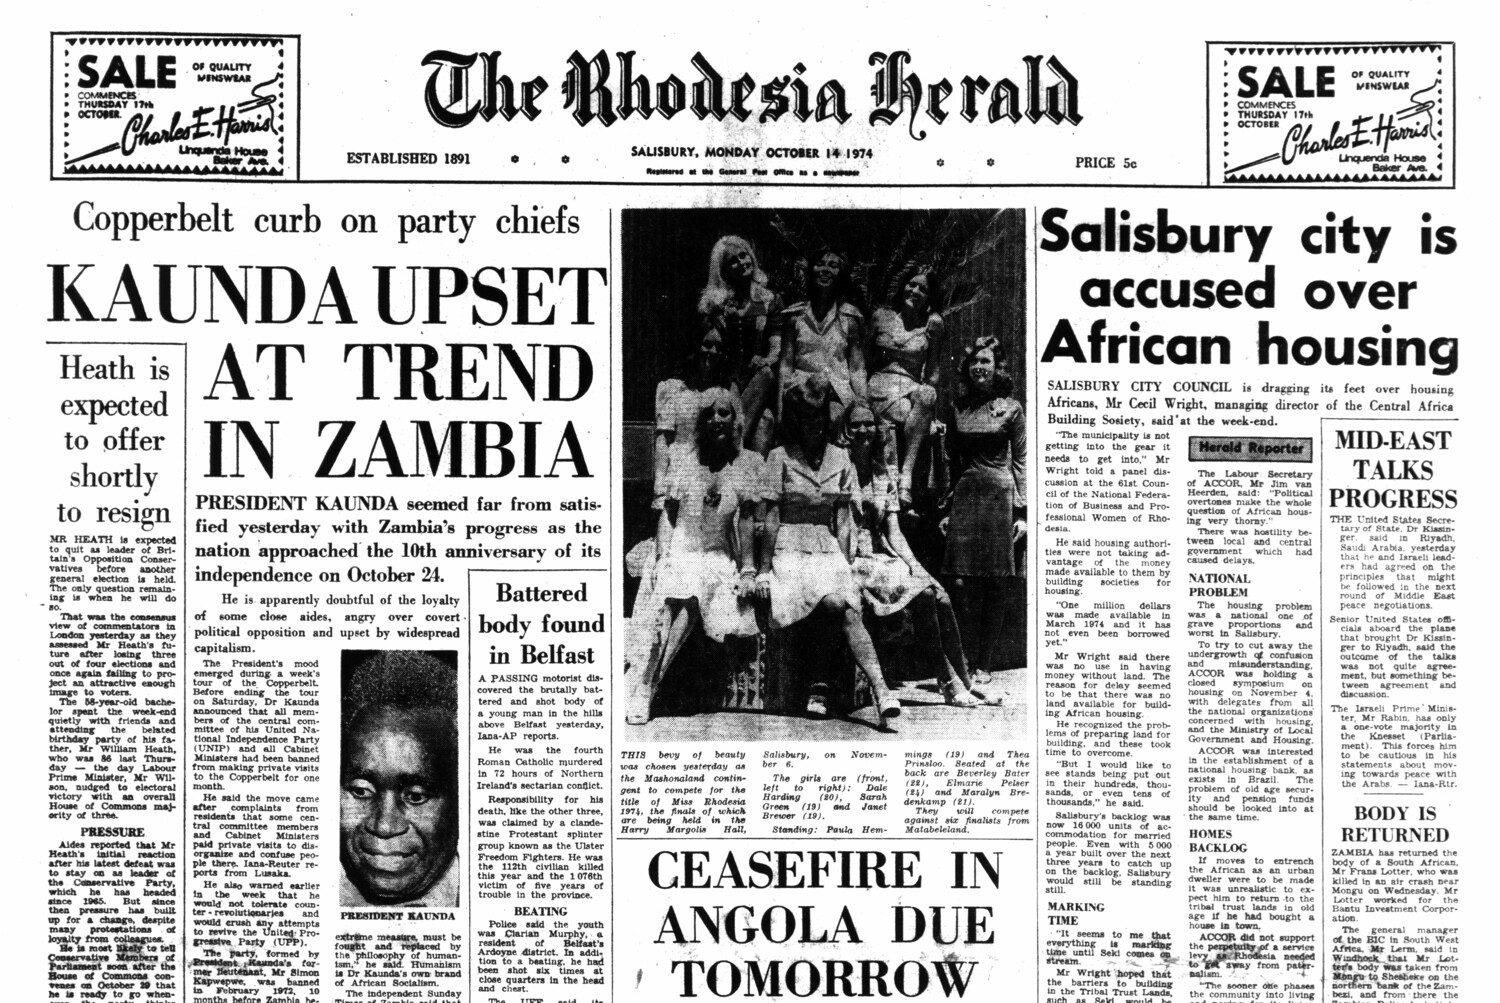 Rhodesia Herald - 14 October 1974